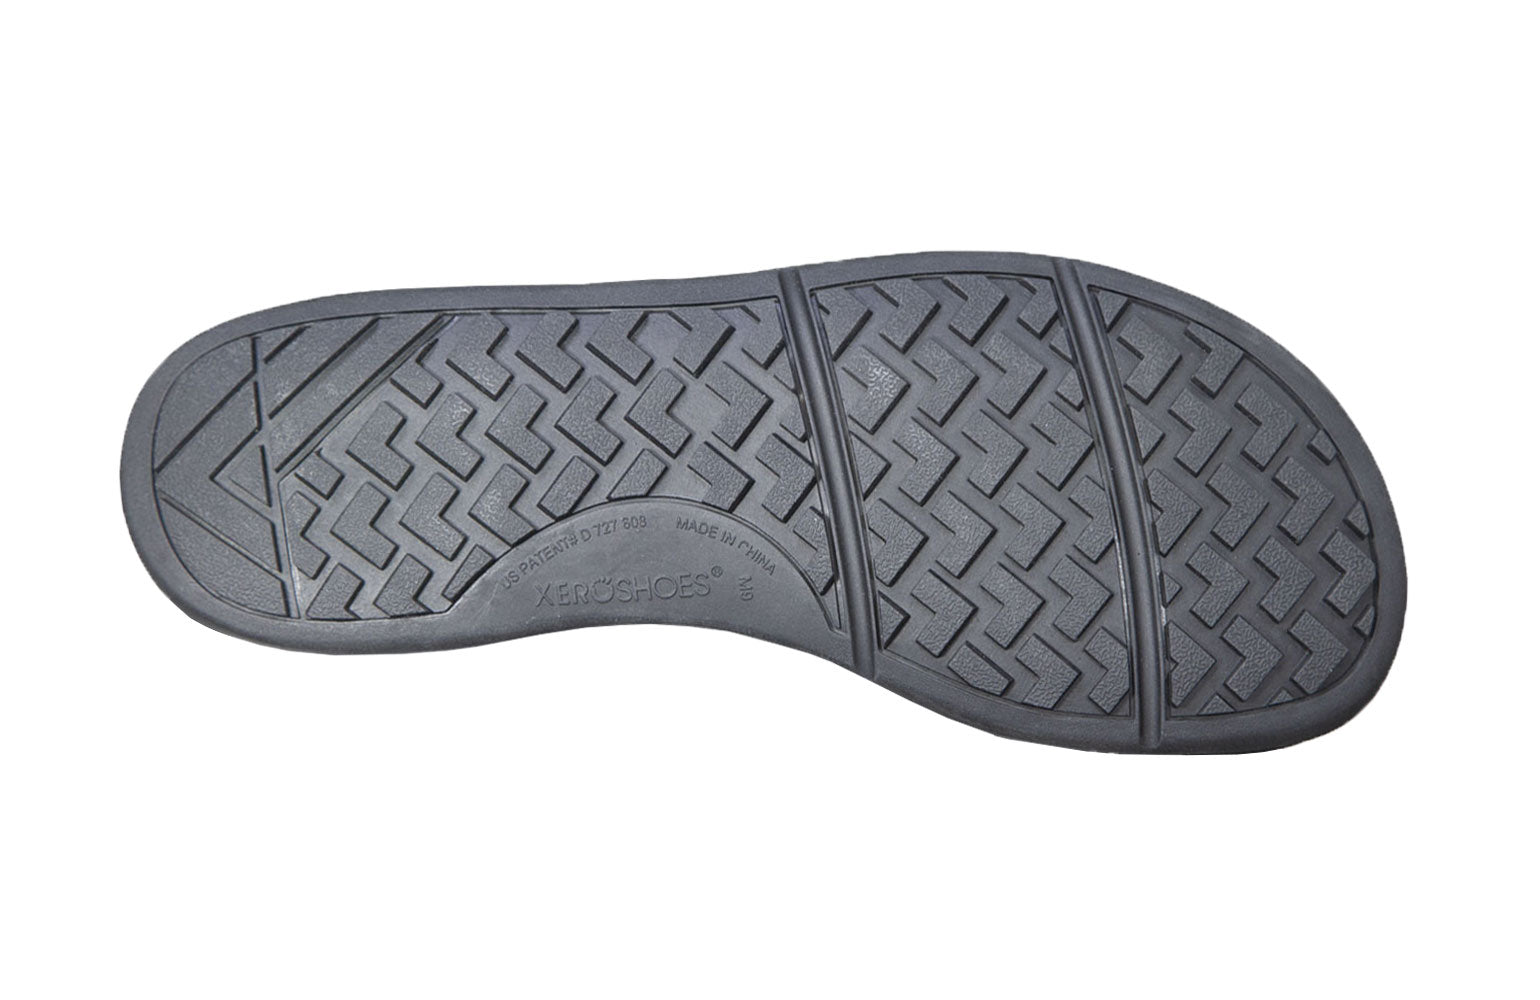 Sål af Xero Shoes Denver i sort, designet til barfodssko, med detaljeret geometrisk mønster for bedre greb.